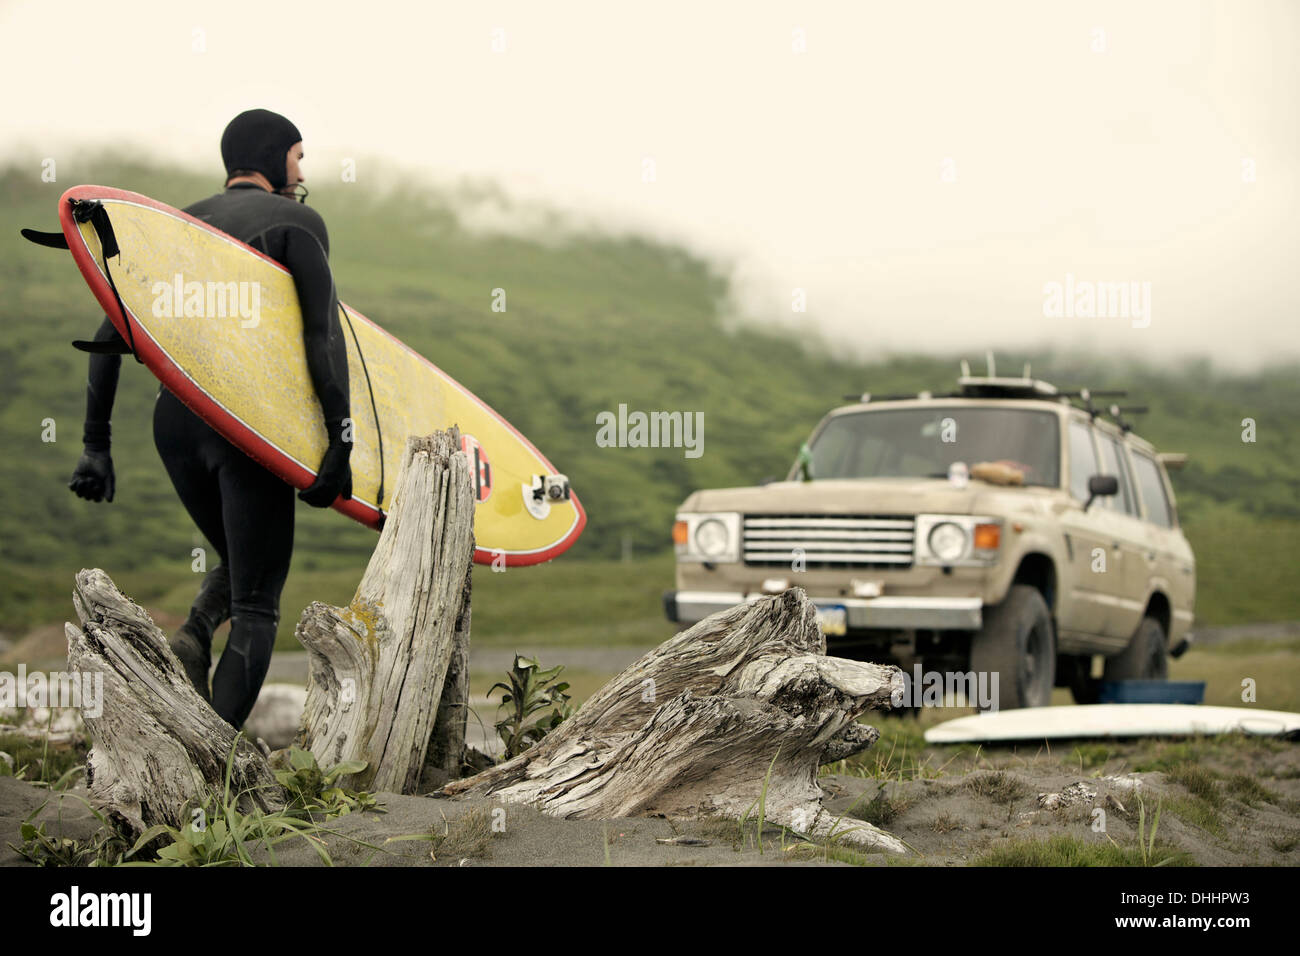 Man carrying surfboard vers voiture, Kodiak, Alaska, USA Banque D'Images